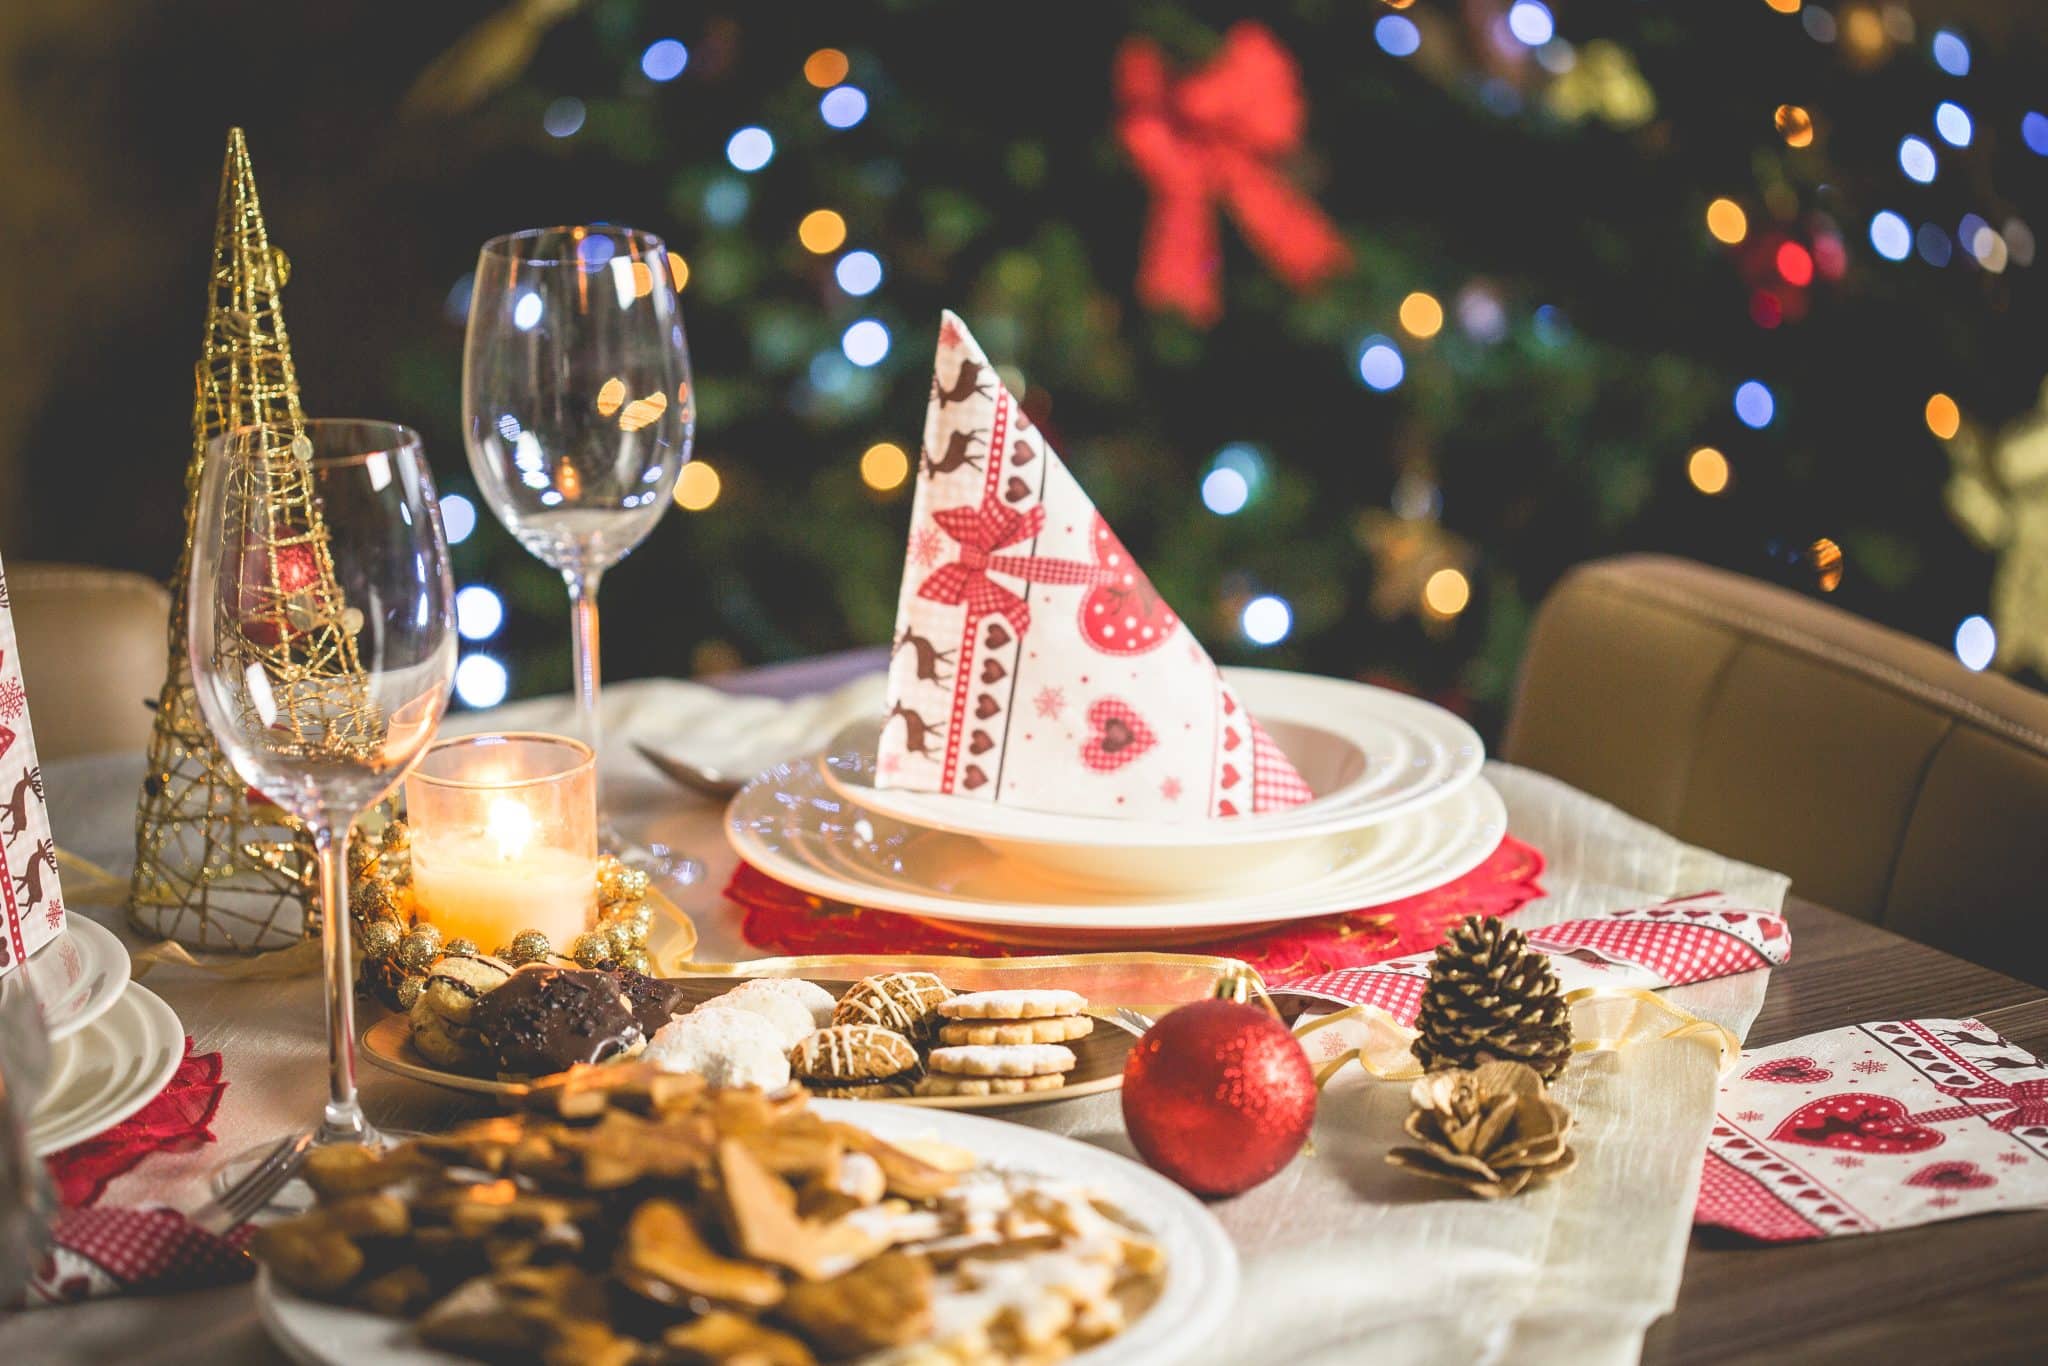 Decoração de mesa de Natal: Faça a sua com perfeição!